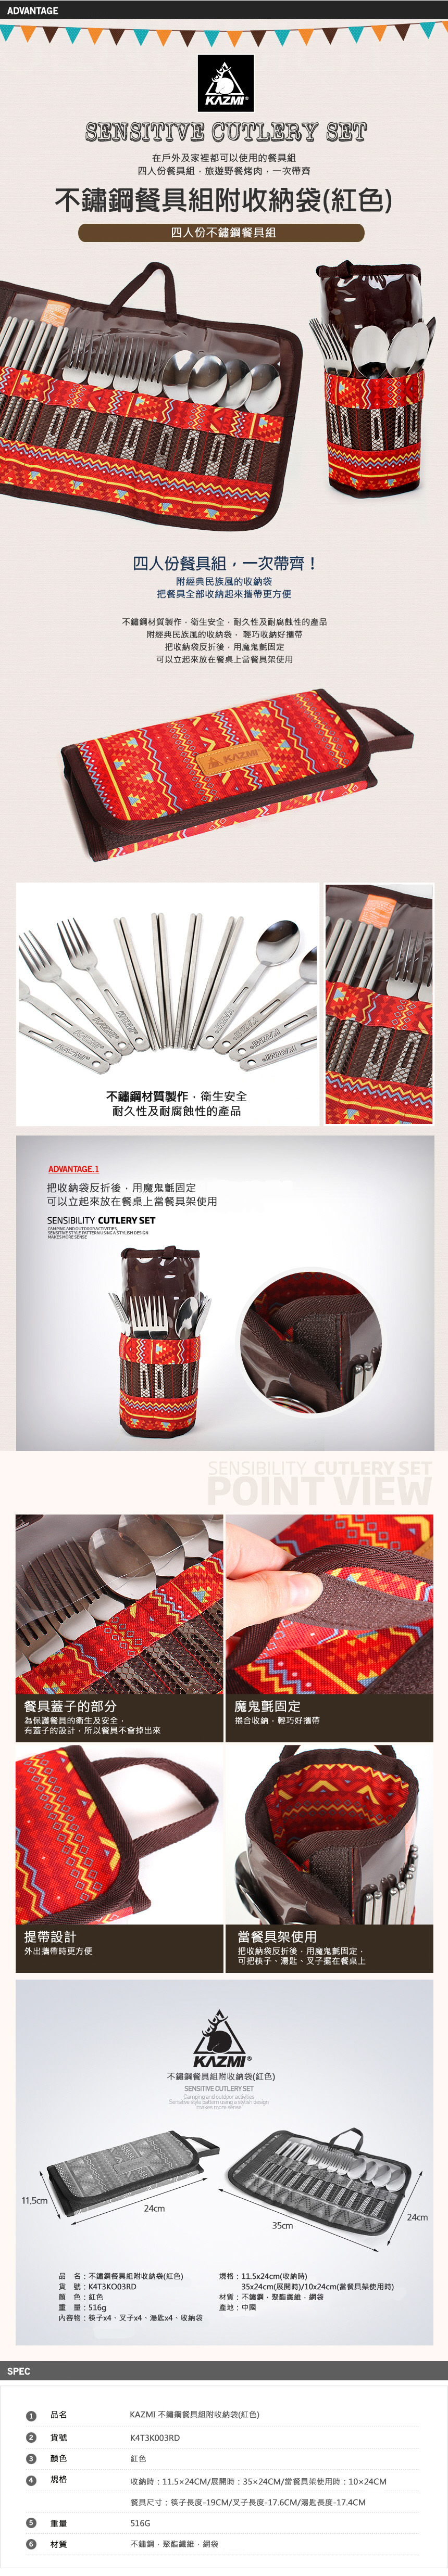 【山野賣客】KAZMI 不鏽鋼餐具組附收納袋 (紅色) K4T3K003RD